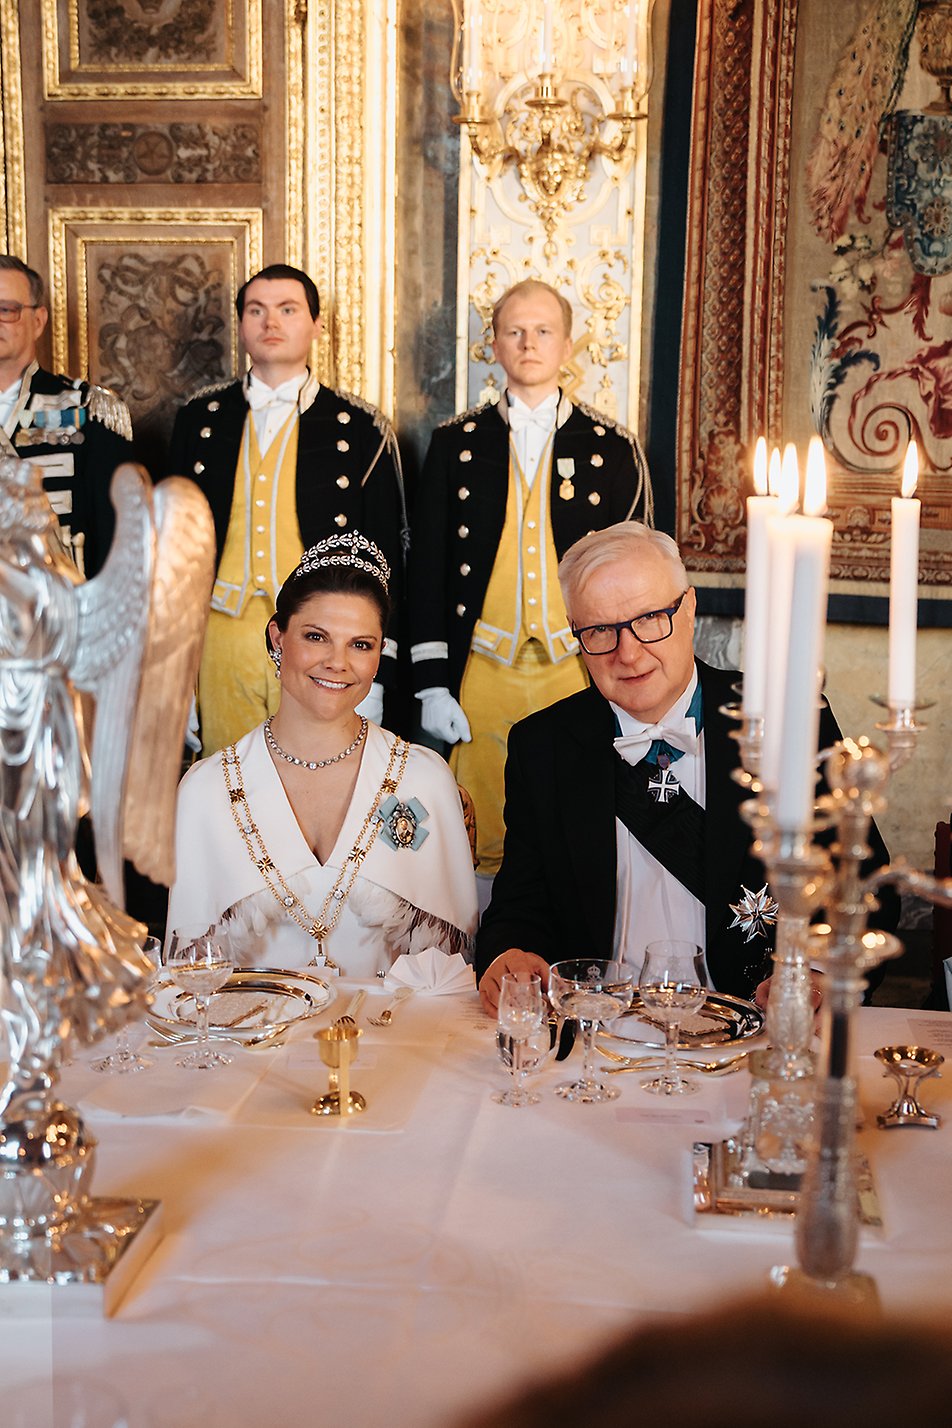 Kronprinsessan och ordförande Olli Rehn.